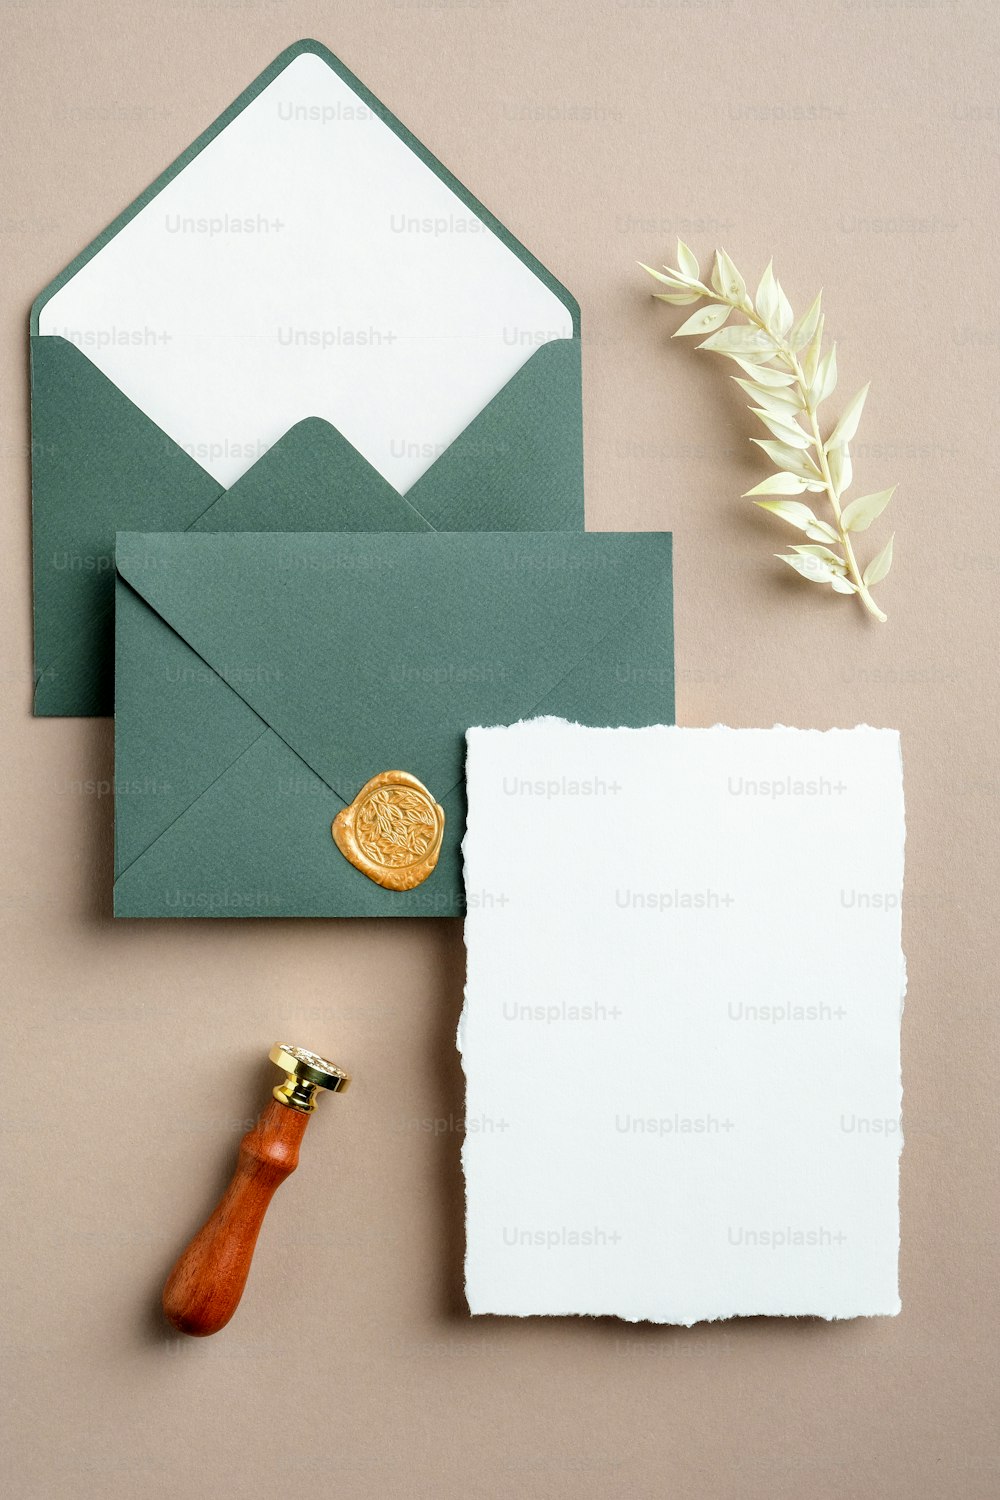 Hochzeitspapier Set Draufsicht. Flaches leeres Einladungskartenmodell, grüne Umschläge, Wachssiegelstempel, getrocknete Blumen.